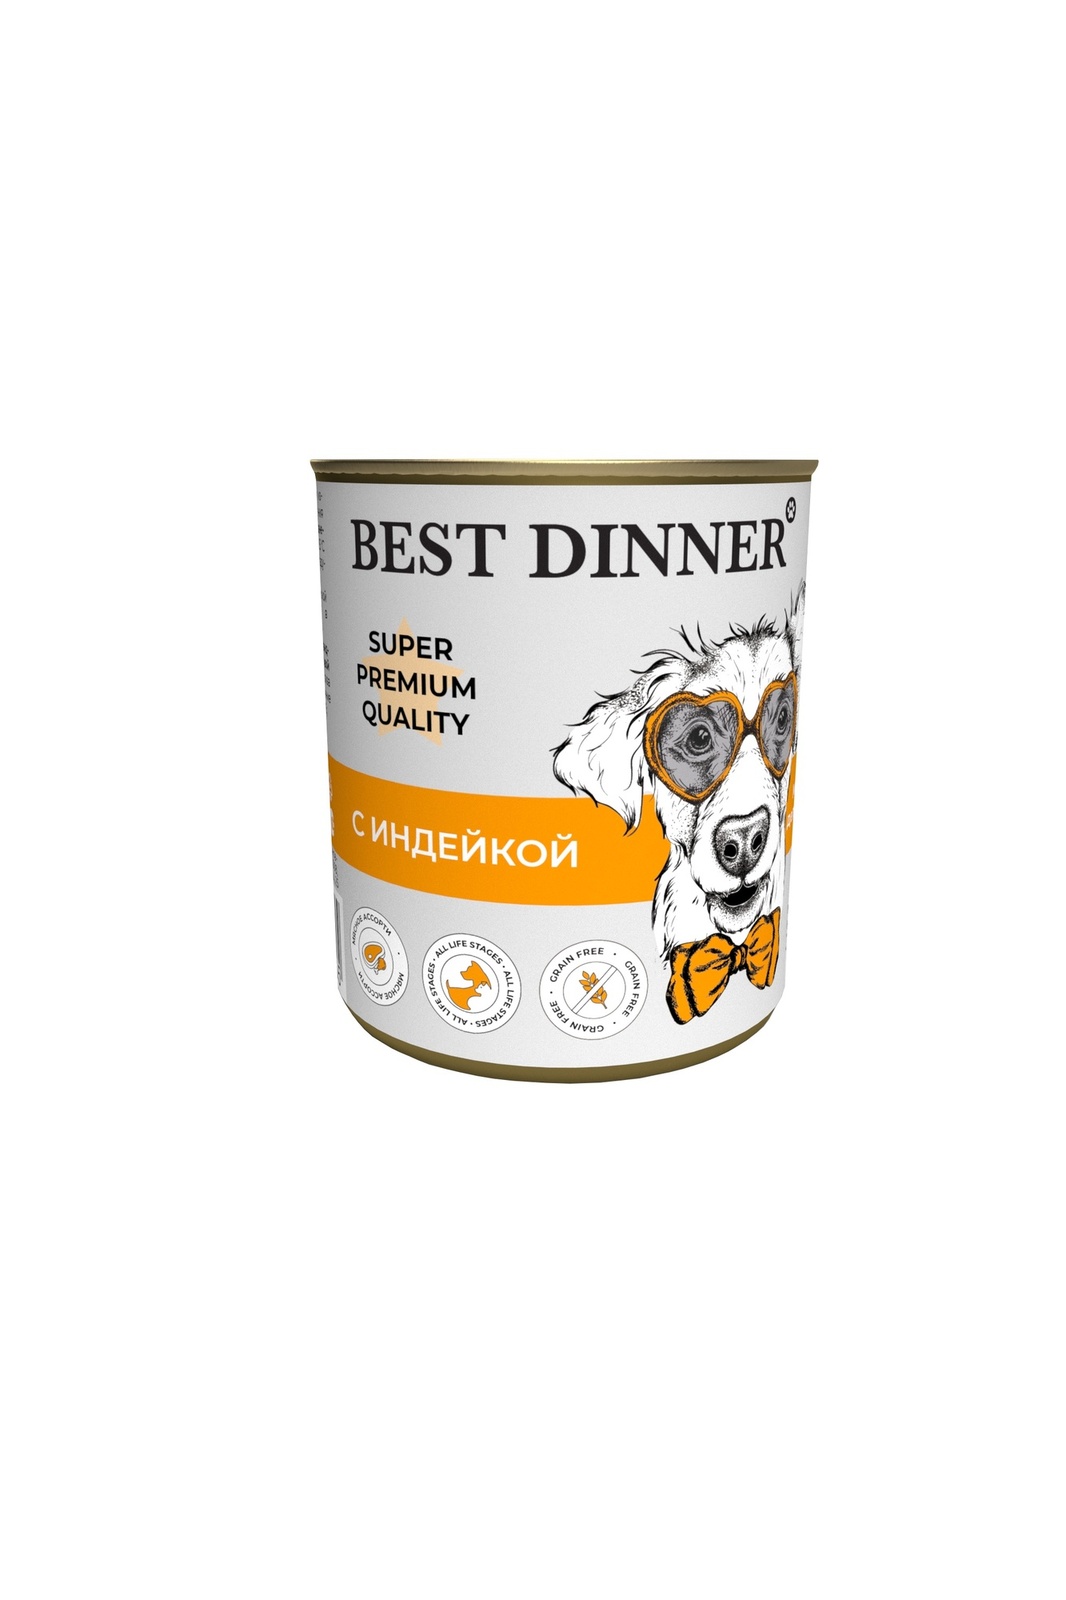 Best Dinner Best Dinner консервы для собак Super Premium С индейкой (340 г) best dinner best dinner консервы premium меню 3 с говядиной и кроликом 340 г